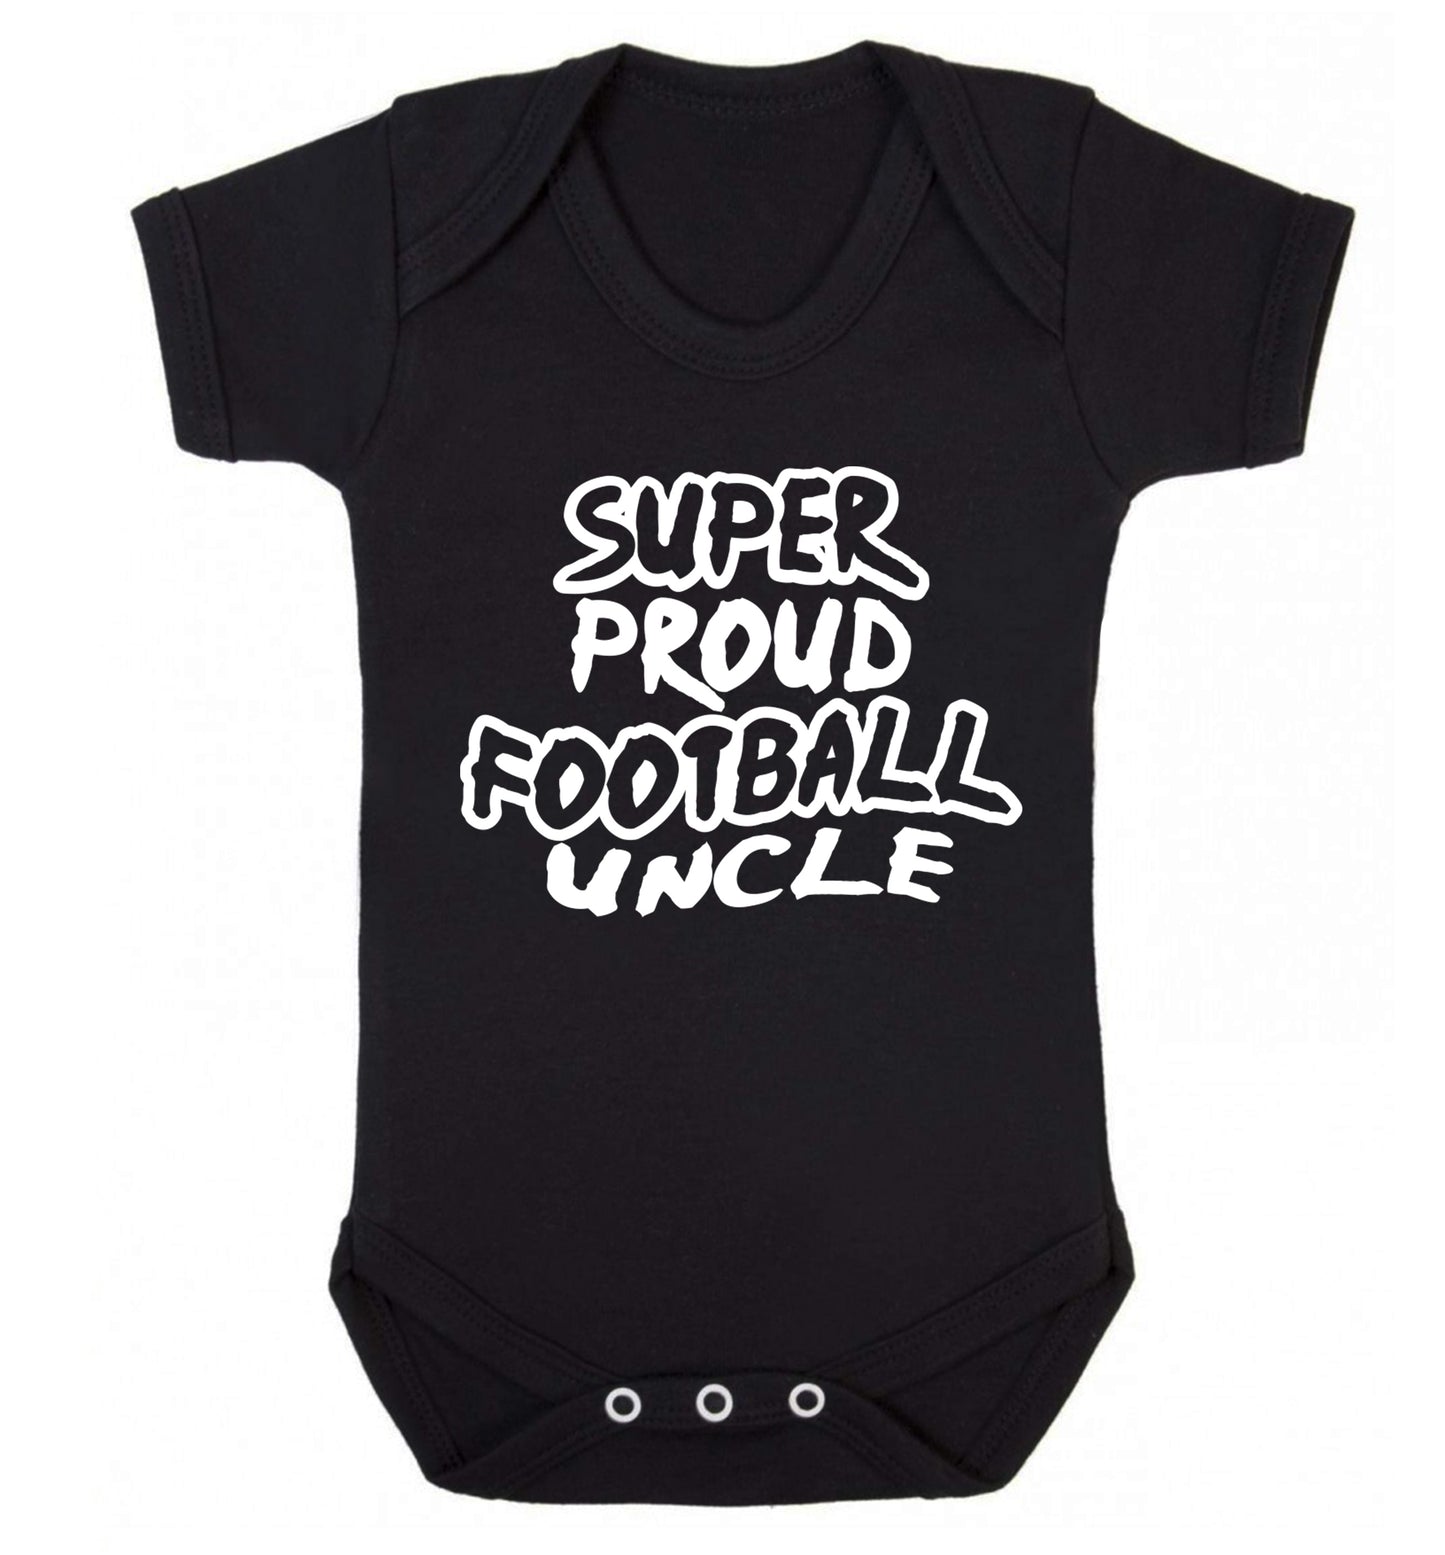 Super proud football uncle Baby Vest black 18-24 months